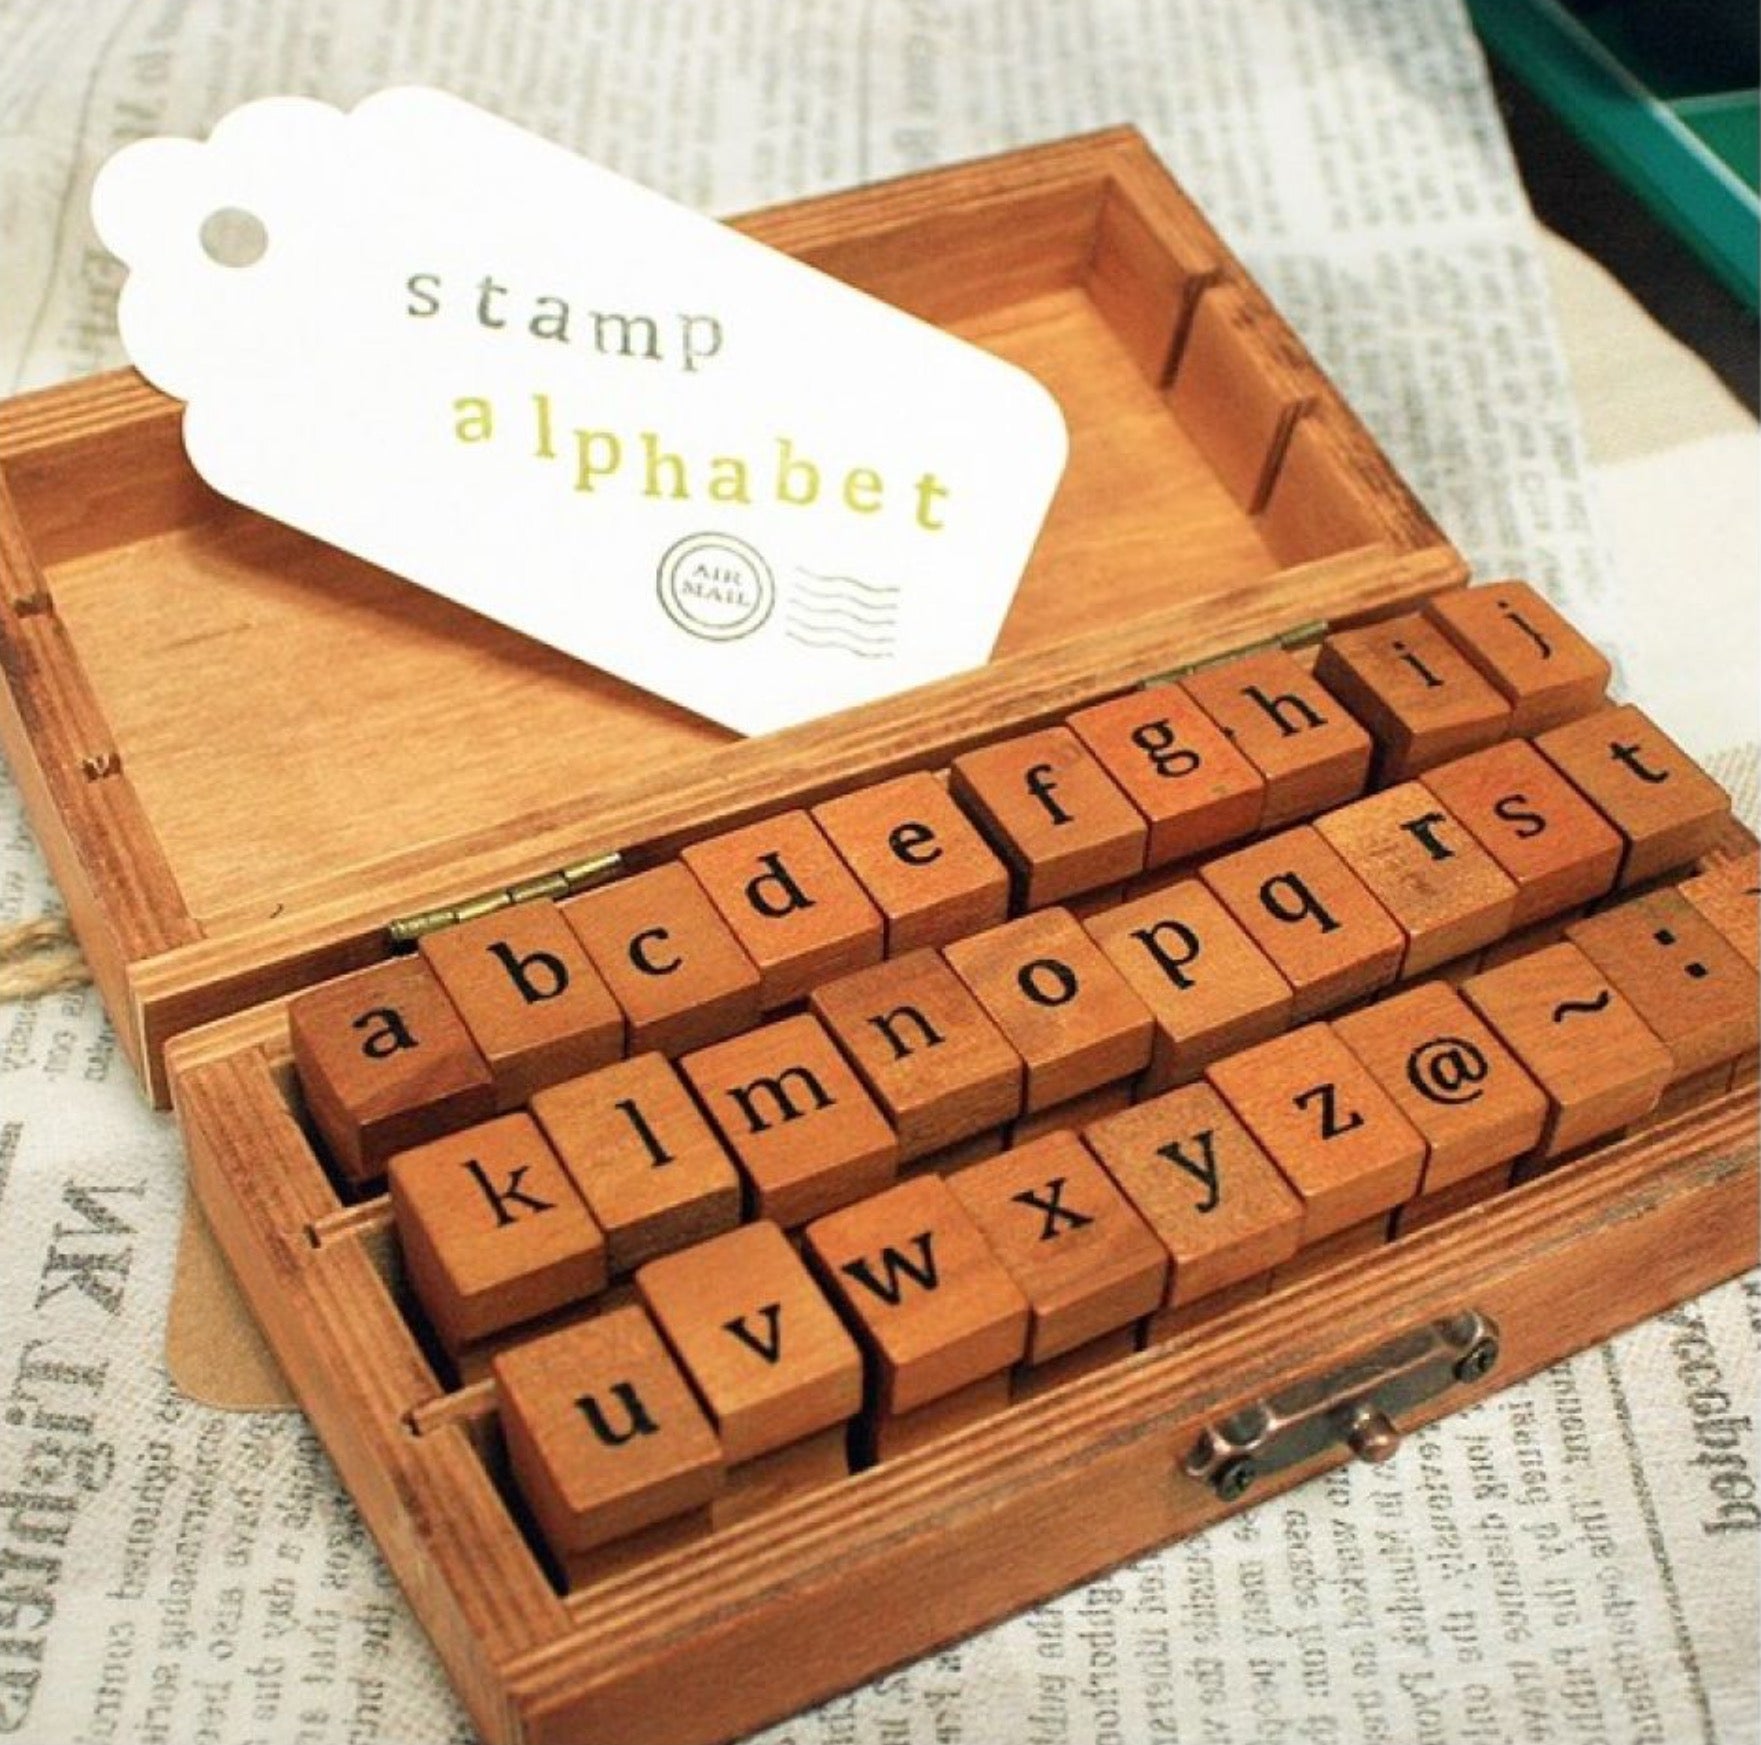 Pink Lemon Shop Studio Stationary wooden box alphabet letter stamps